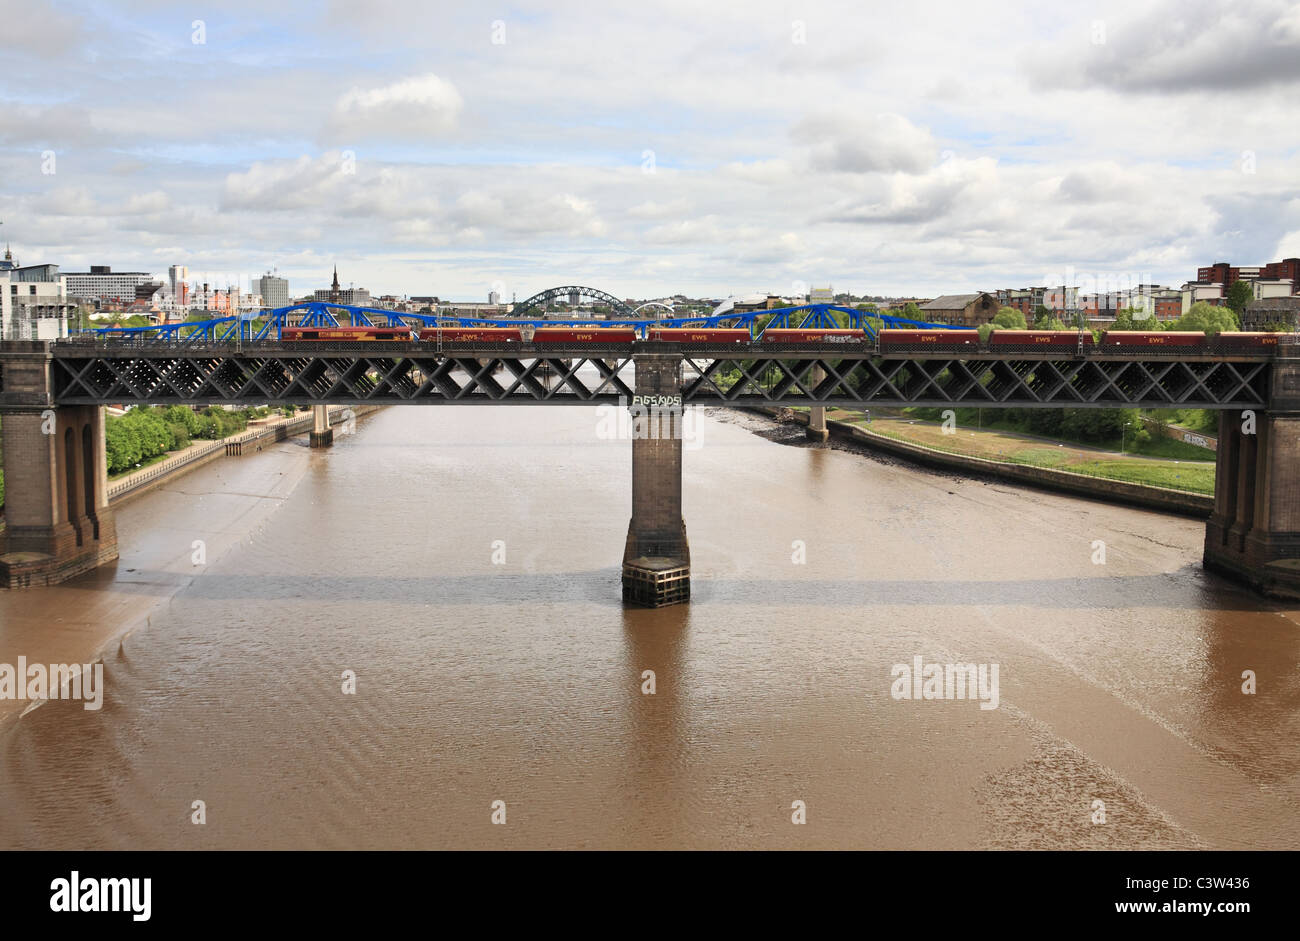 Un train de charbon de l'EWS traversant le Roi Edward pont sur la rivière Tyne et Gateshead entre Newcastle, Angleterre du Nord-Est, Royaume-Uni Banque D'Images